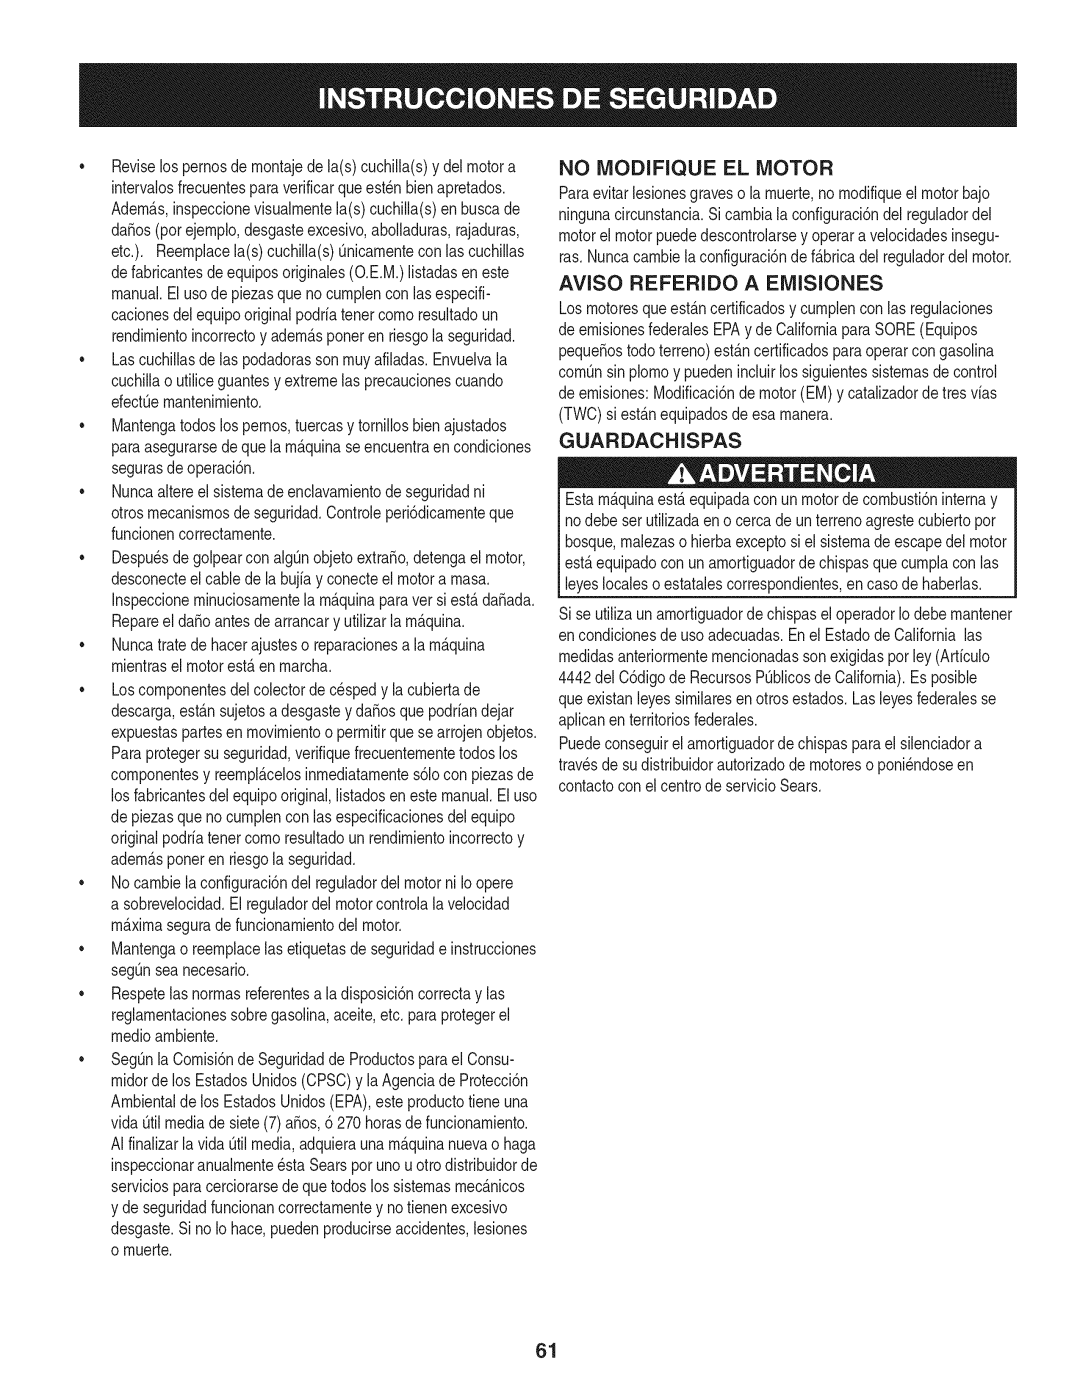 Craftsman 247.28901 manual No Modifique El Motor, Aviso Referido A Emisiones, Guardachispas 